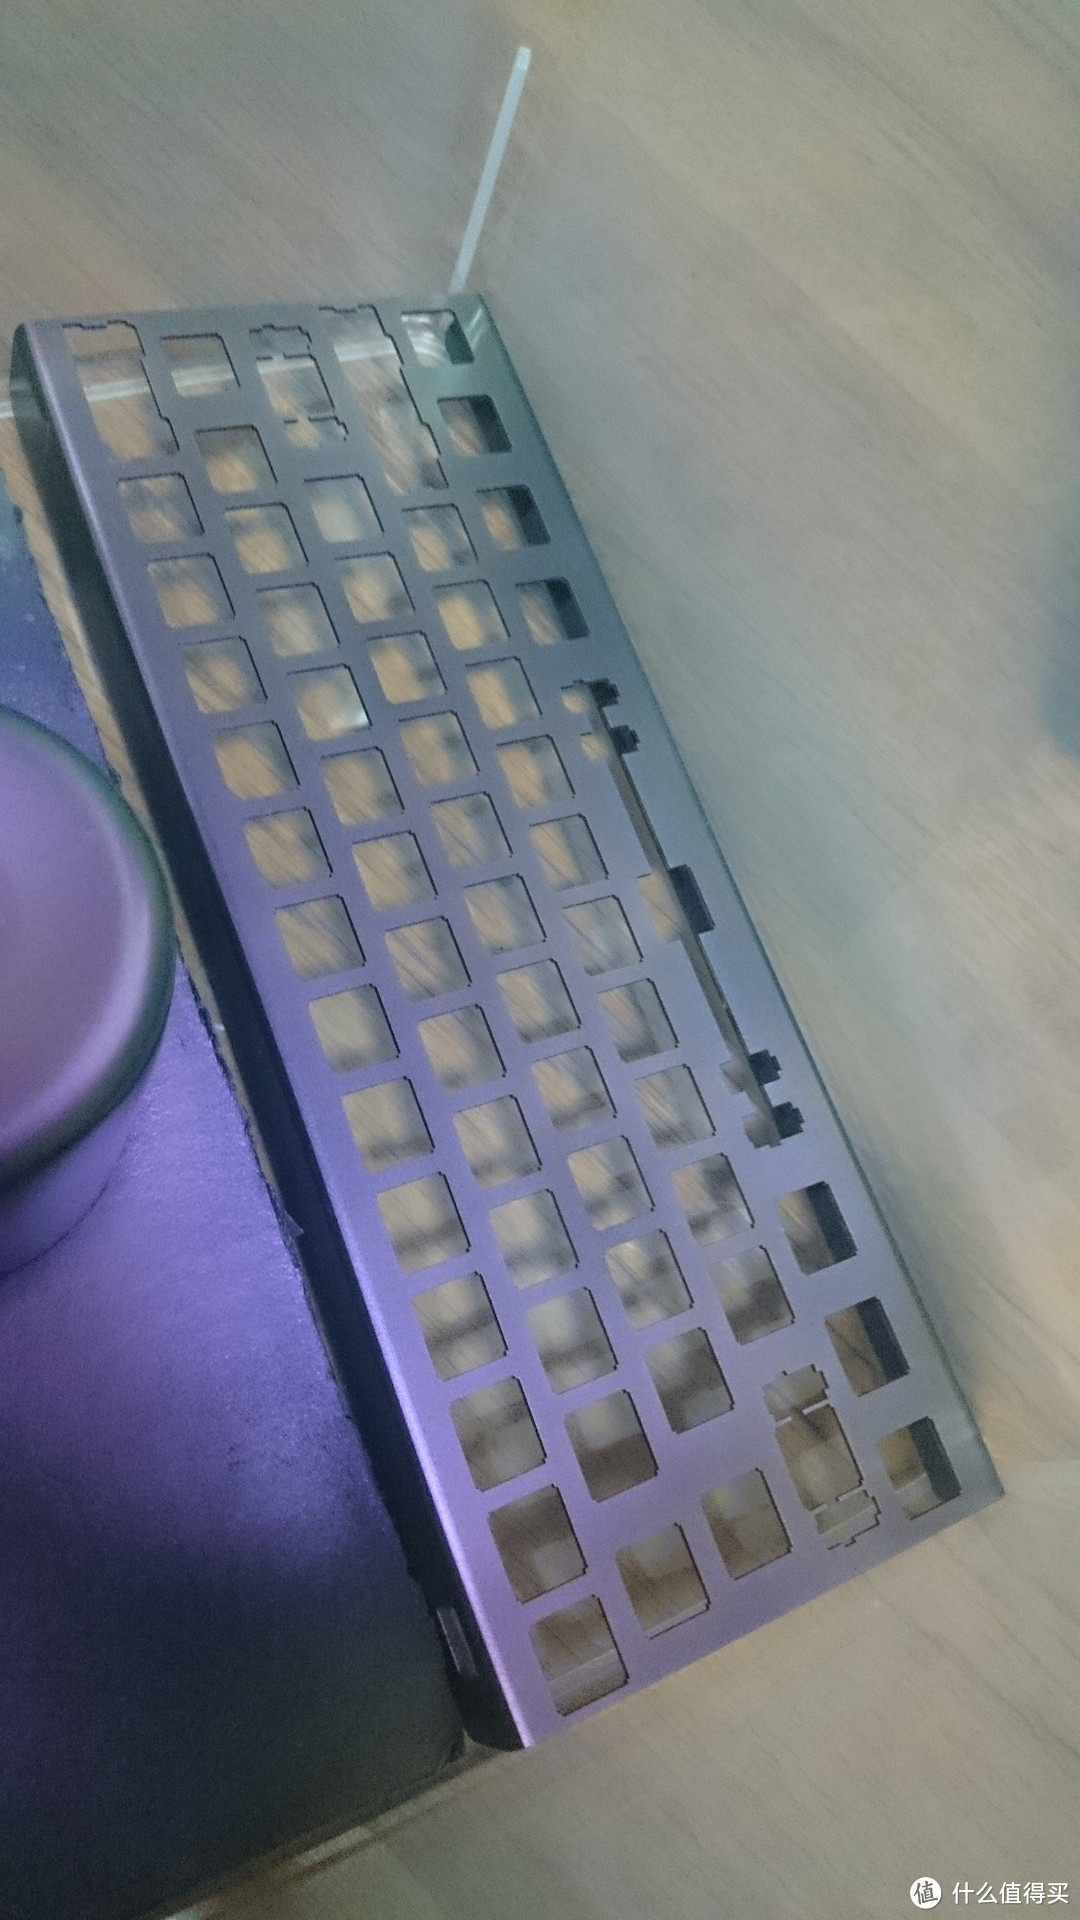 从零开始的折腾—GH60 键盘外壳 上漆体验